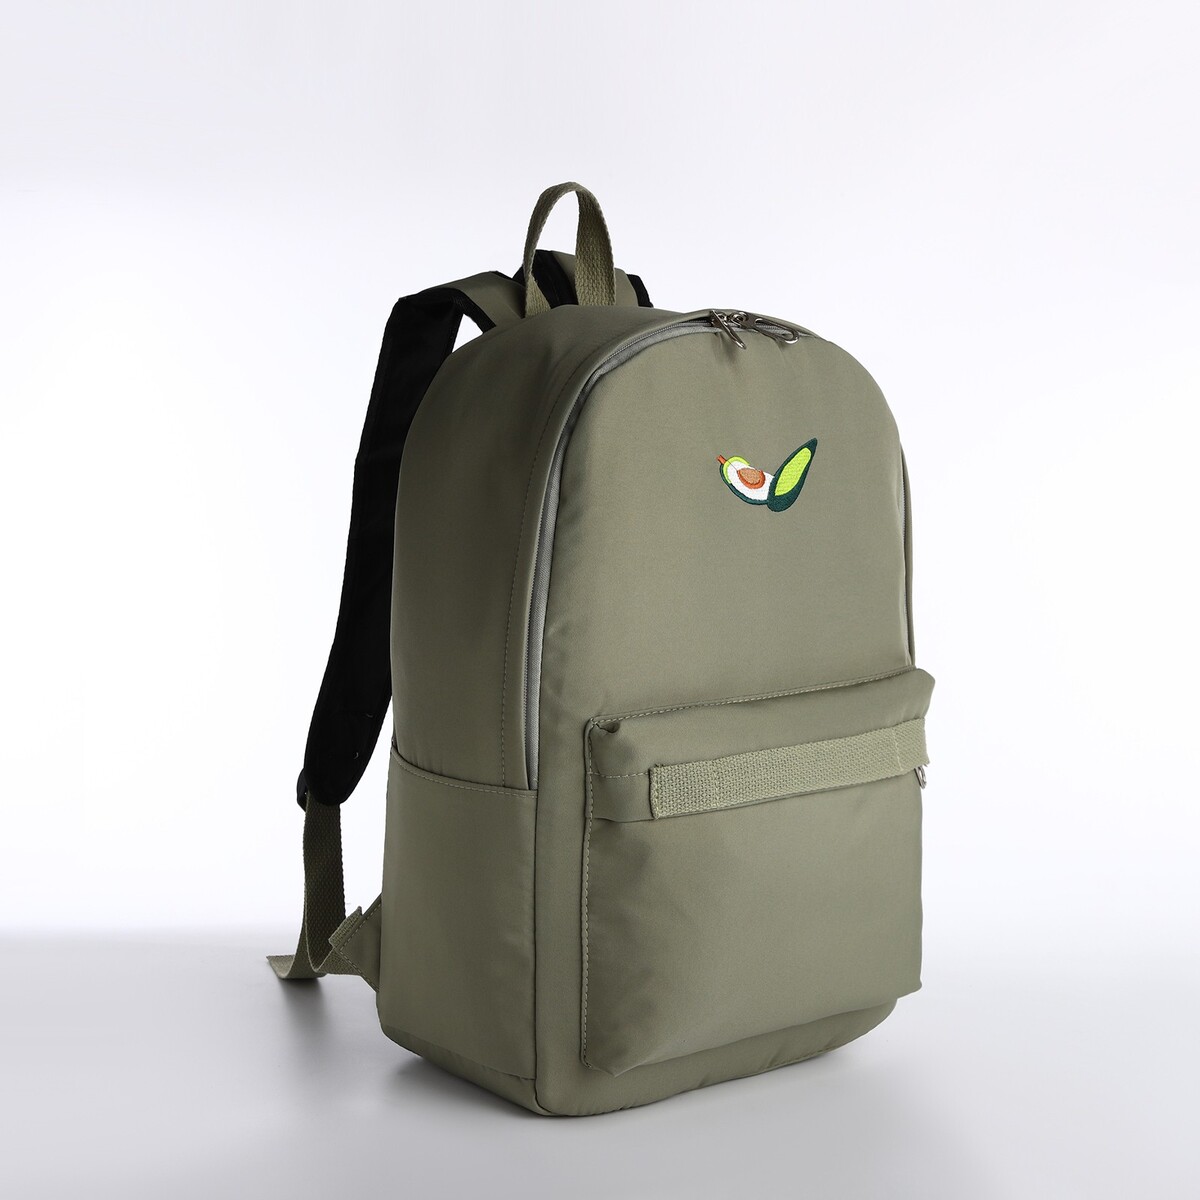 Рюкзак молодежный из текстиля на молнии, наружный карман, сумочка, цвет зеленый рюкзак молодежный из текстиля на молнии водонепроницаемый наружный карман зеленый